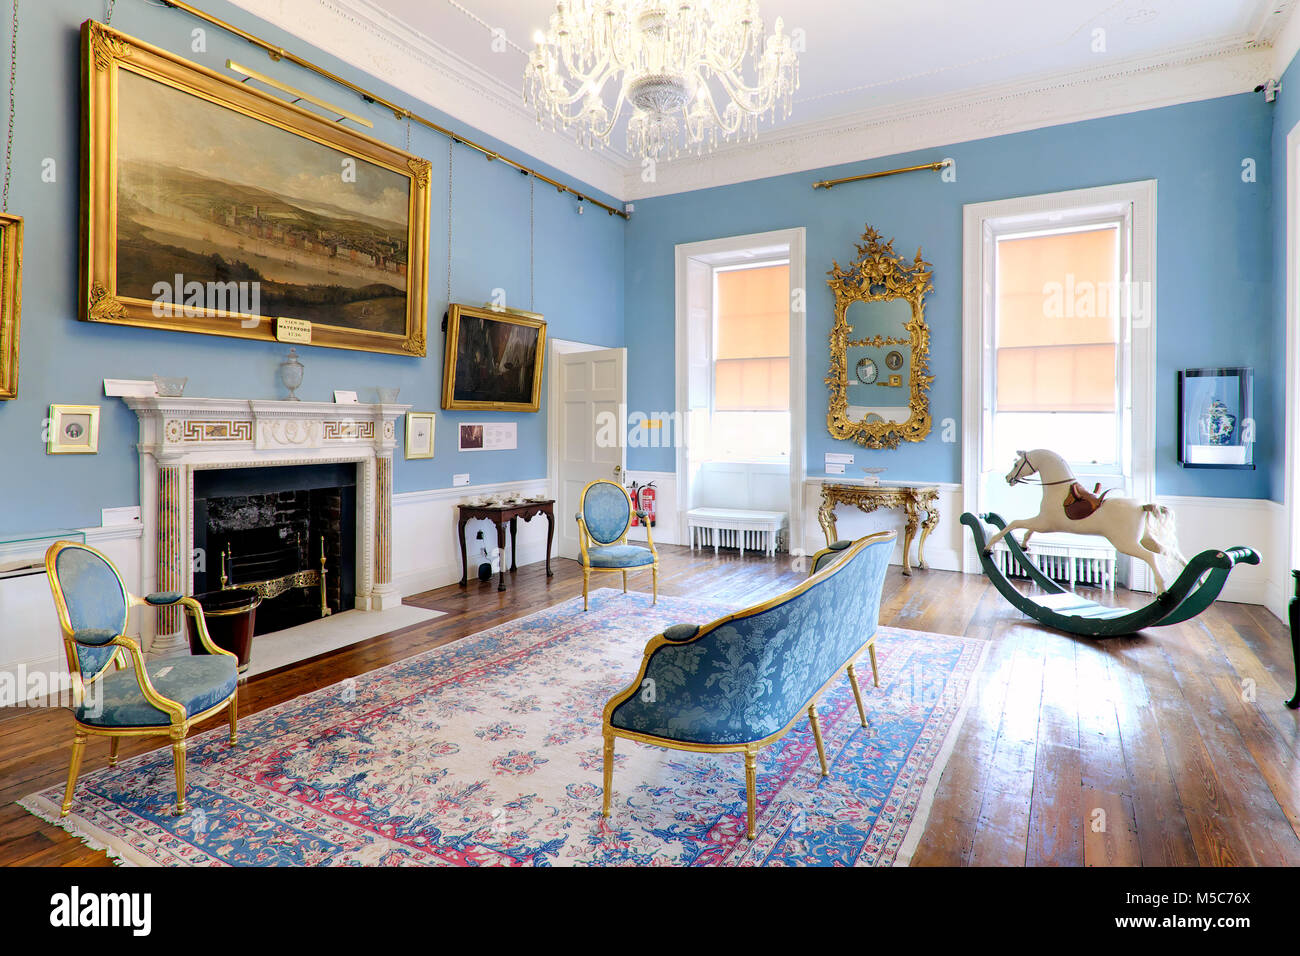 Le salon avec la grande peinture de William Van der Hagen, Bishop's Palace - Trésors de Georgian Waterford, Waterford, Irlande Banque D'Images